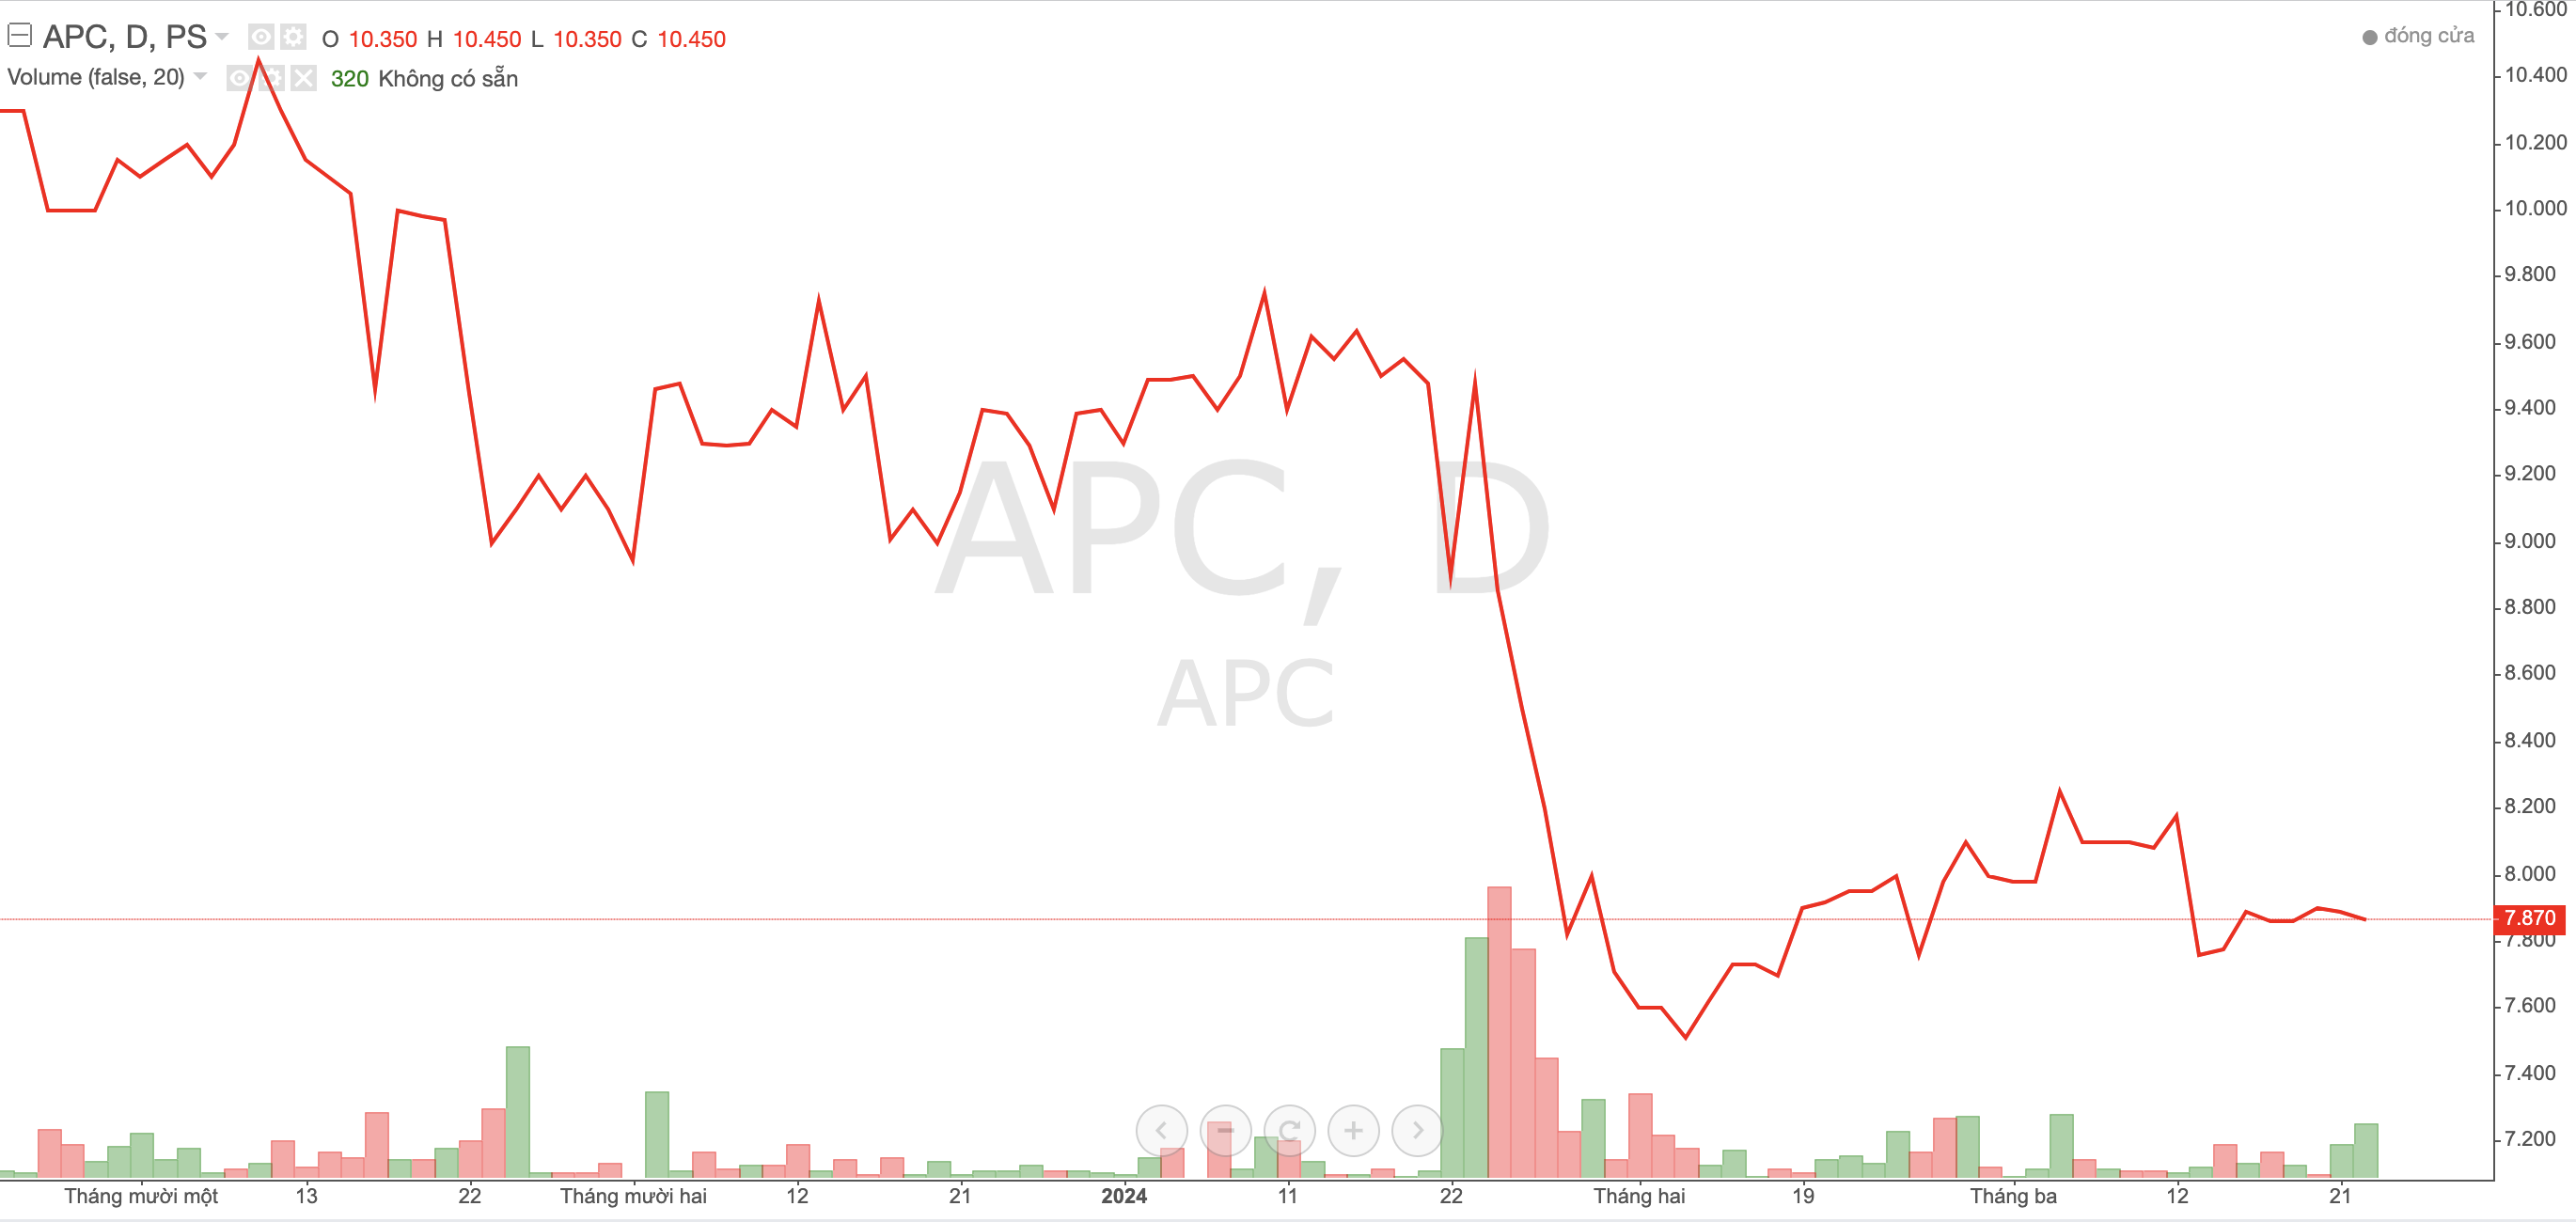 Liên tiếp thua lỗ 3 năm, cổ phiếu APC sắp rời sàn HOSE